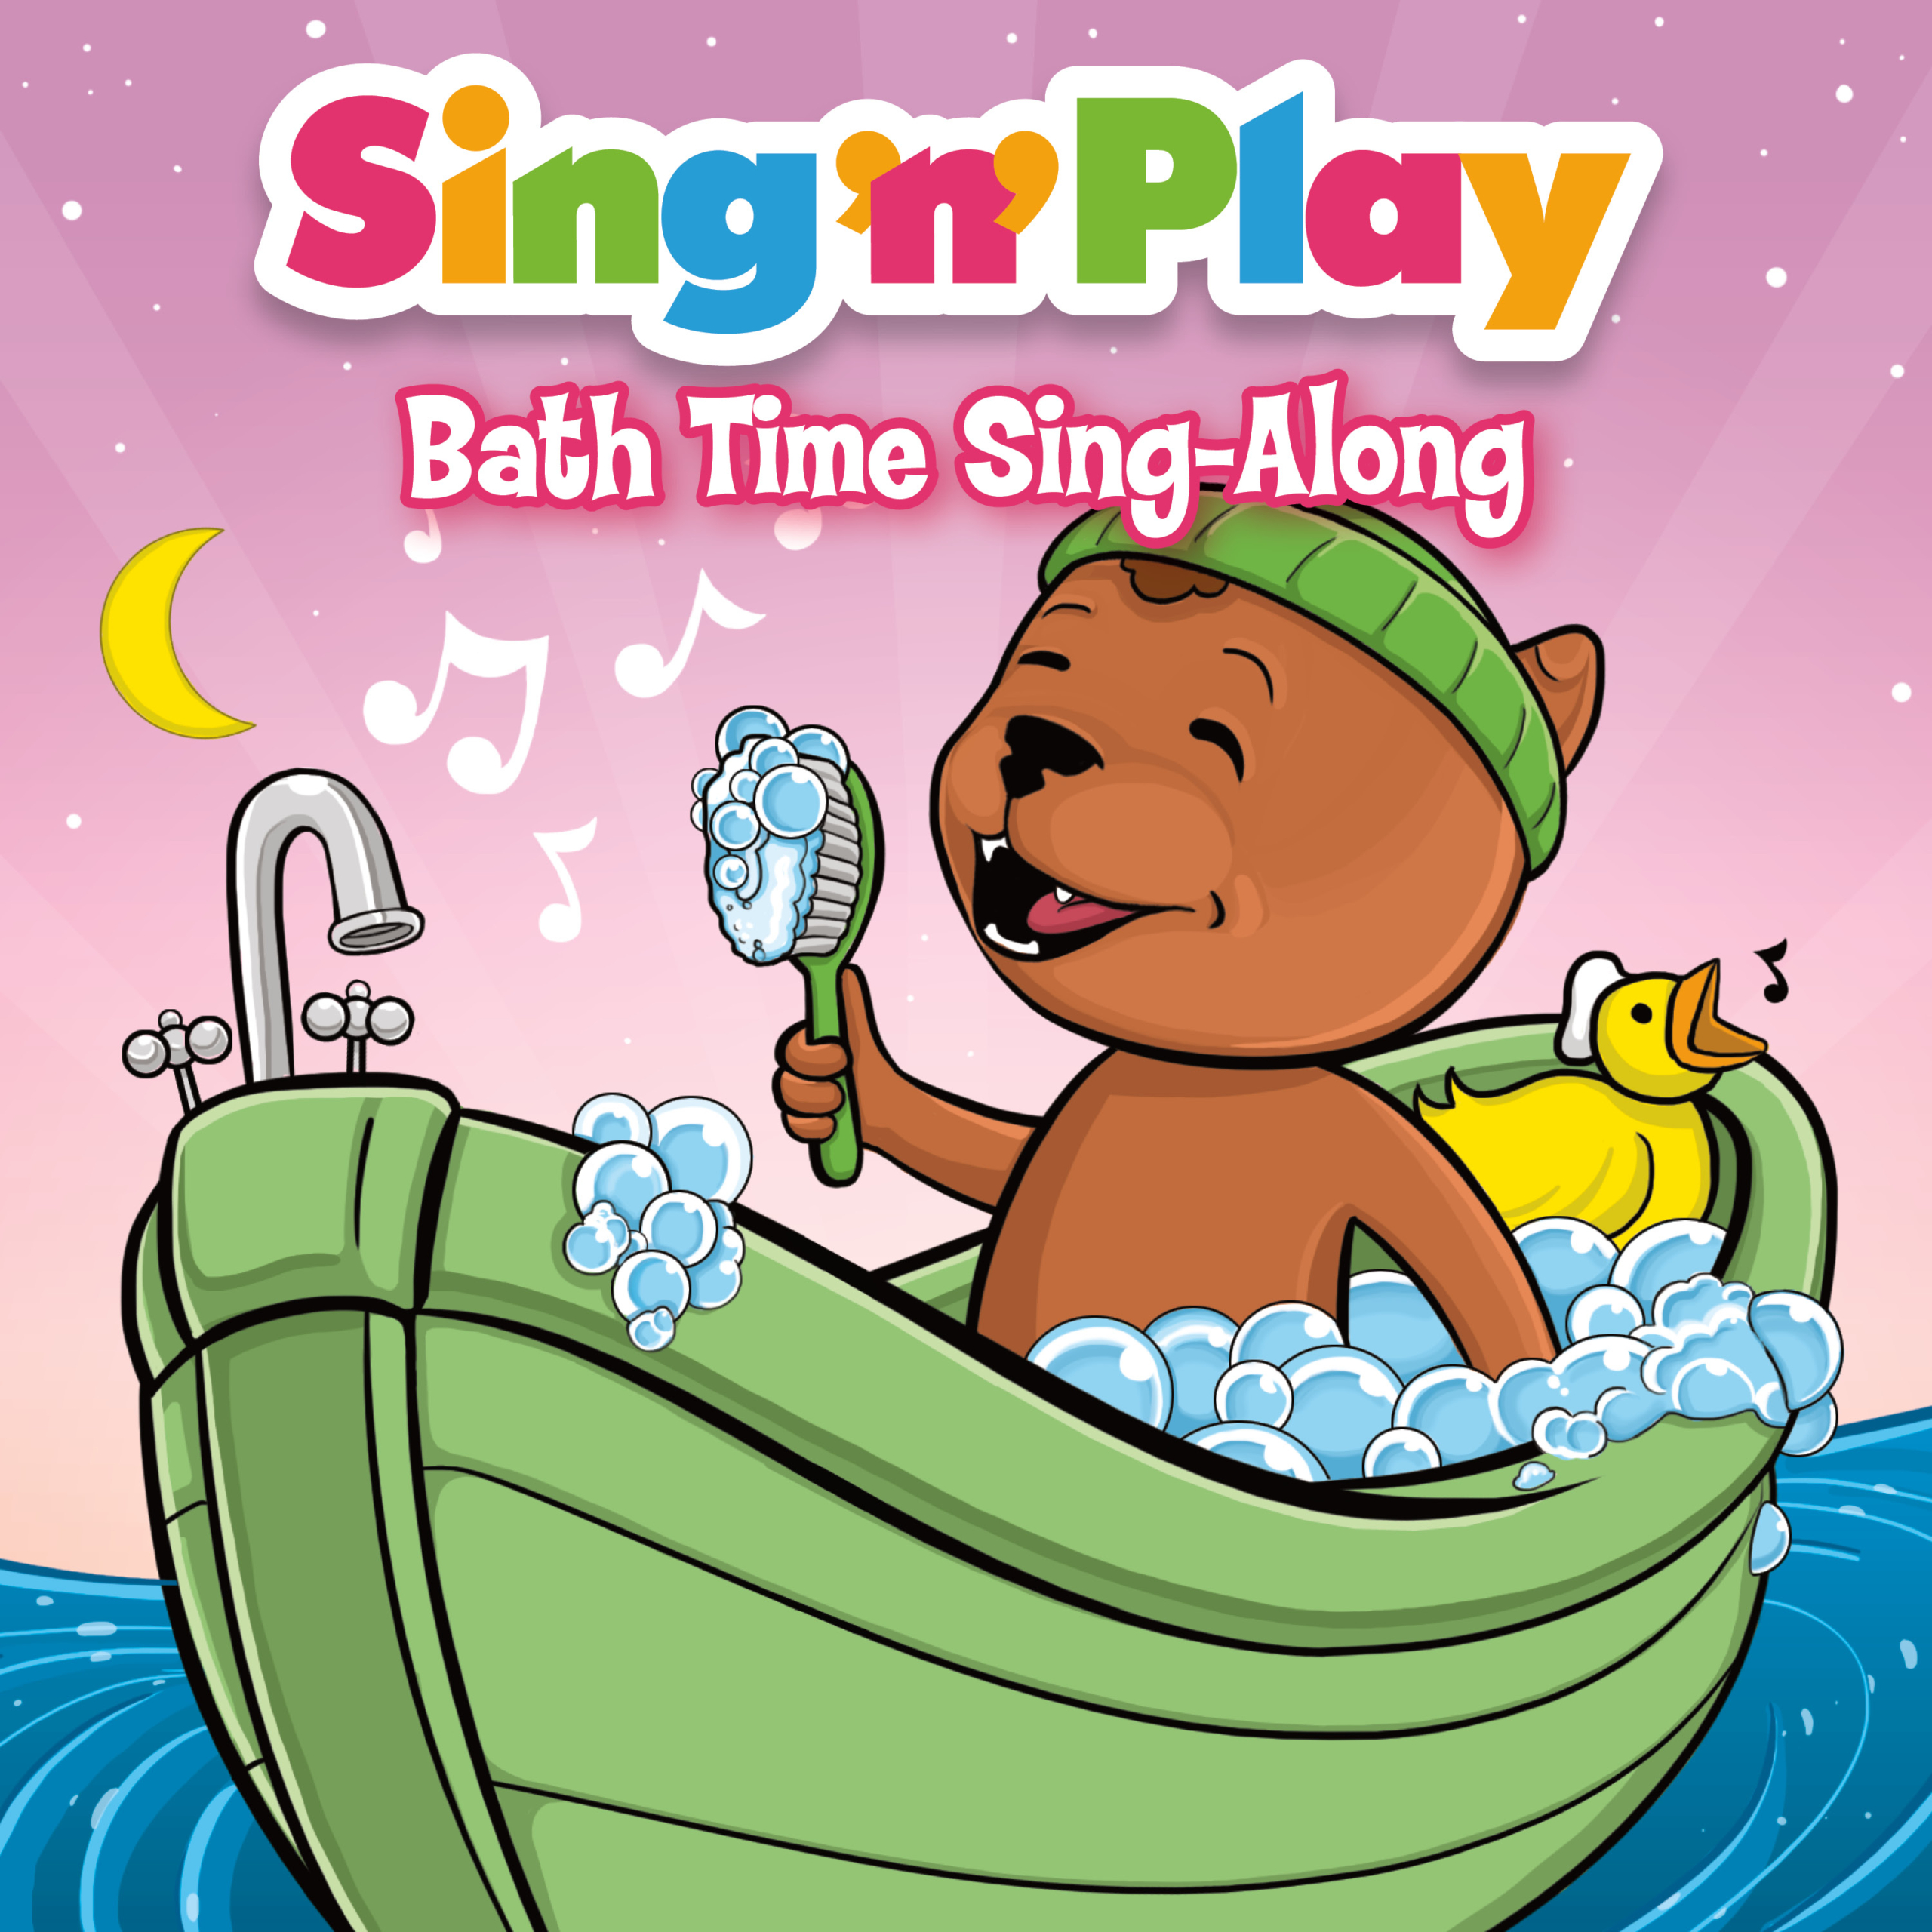 Bath Time Sing-Along